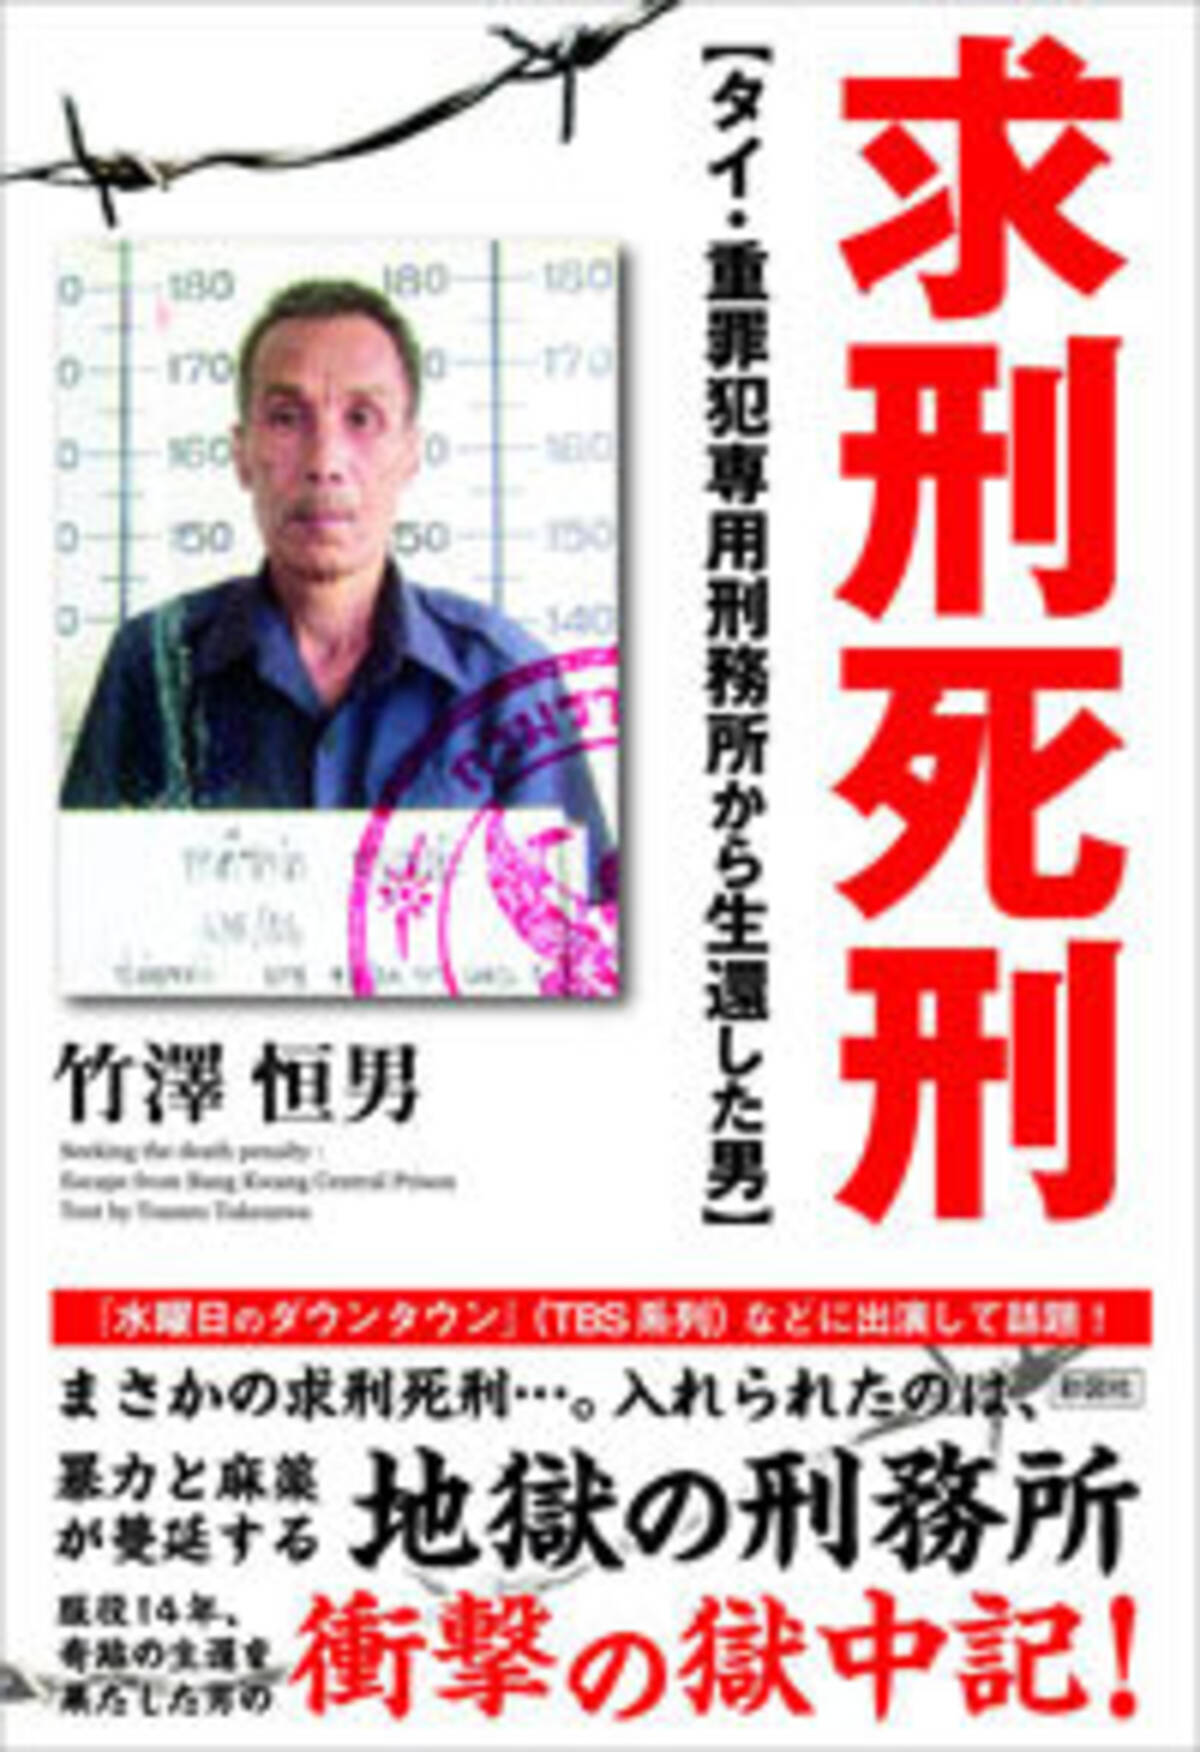 14年間タイの刑務所で服役した男の獄中記 求刑死刑 タイ 重罪犯専用刑務所から生還した男 17年9月12日 エキサイトニュース